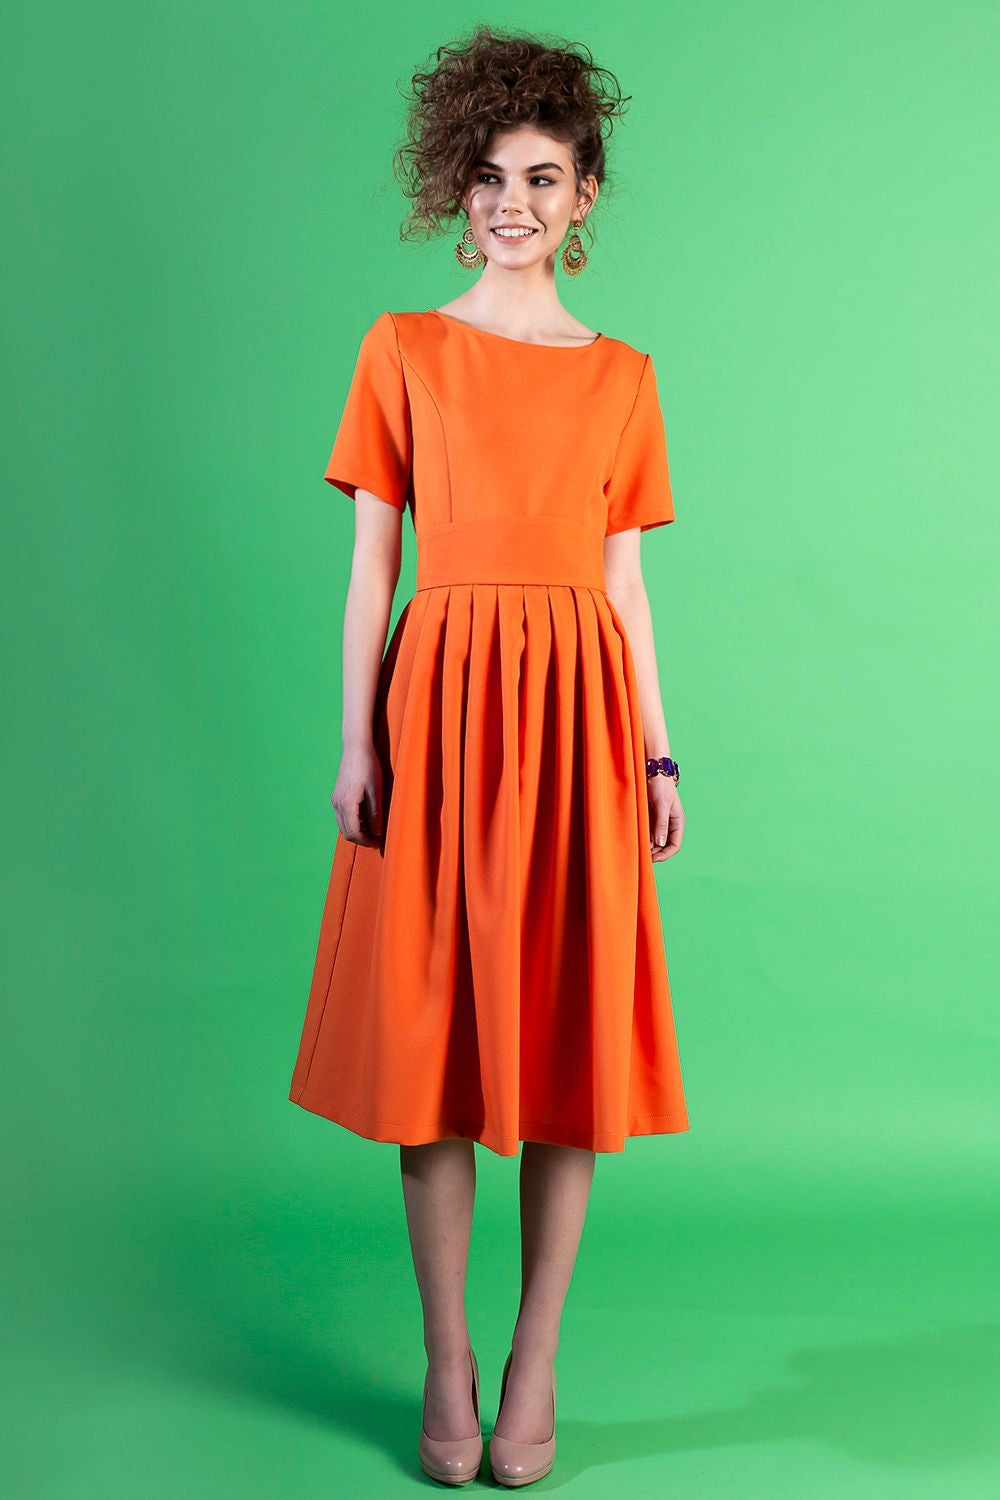 Orangefarbenes Kleid mit Falten 